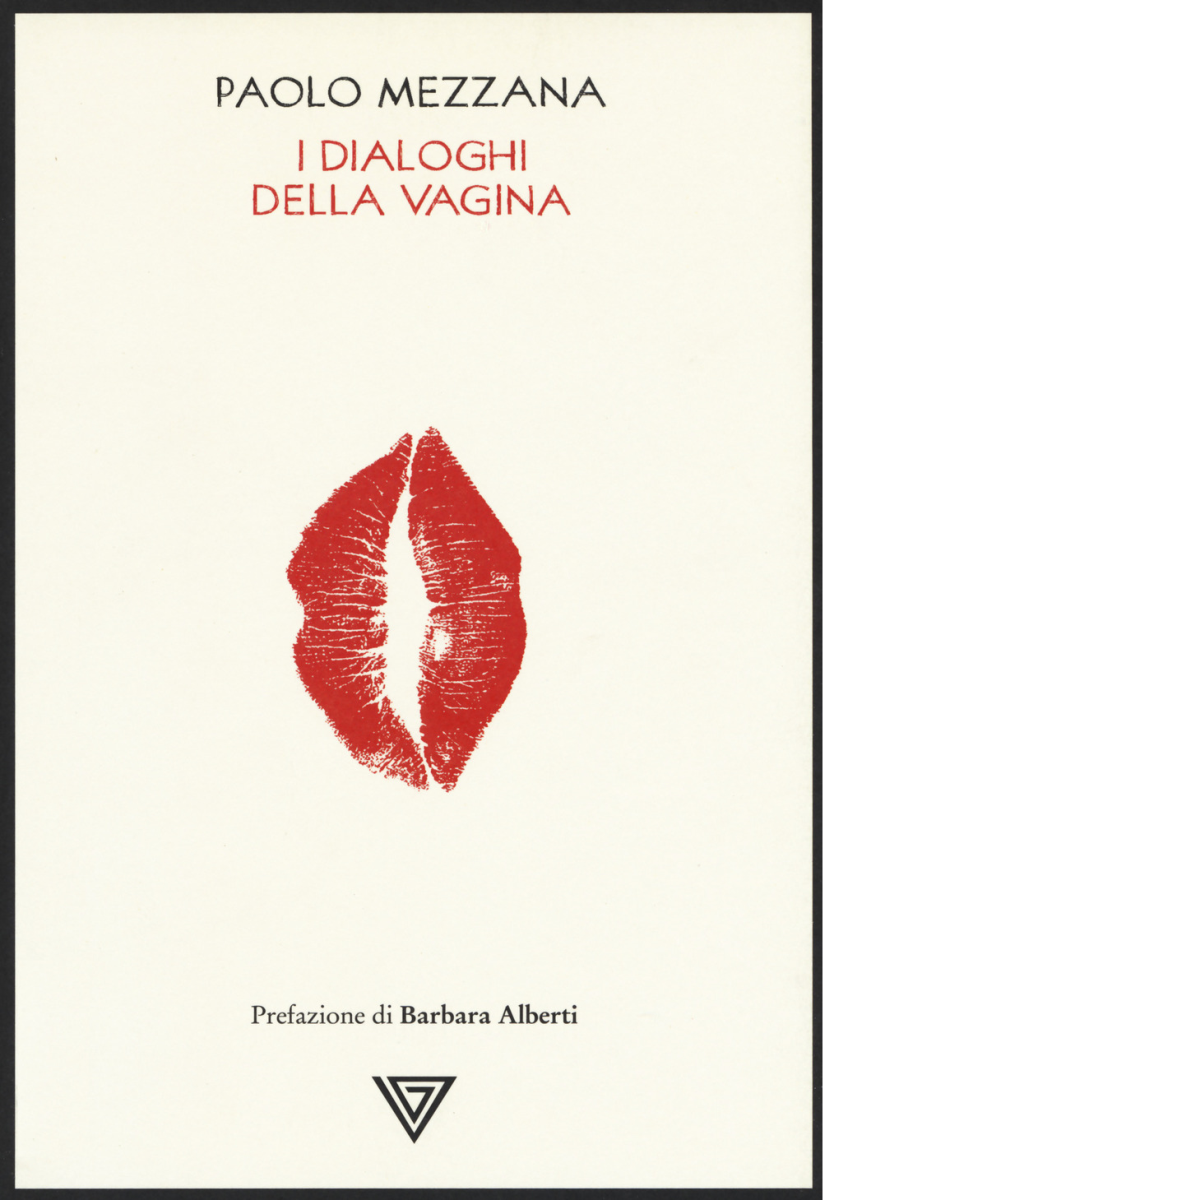 I dialoghi della vagina -Paolo Mezzana - Perrone editore, 2019